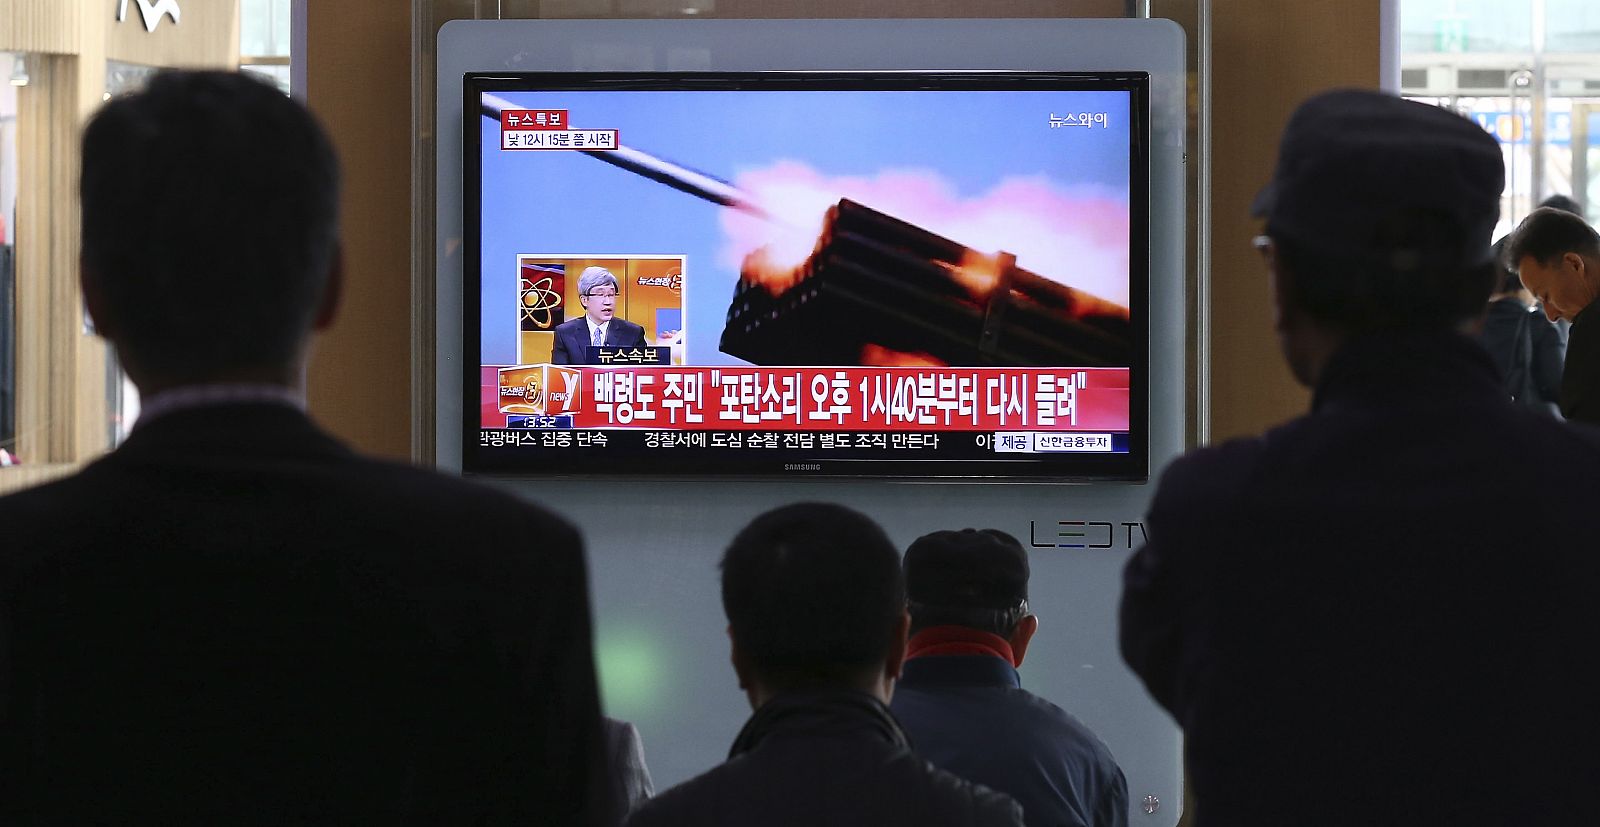 Pasajeros miran la televisión con noticias de los ejercicios de Corea del Norte, en Seúl